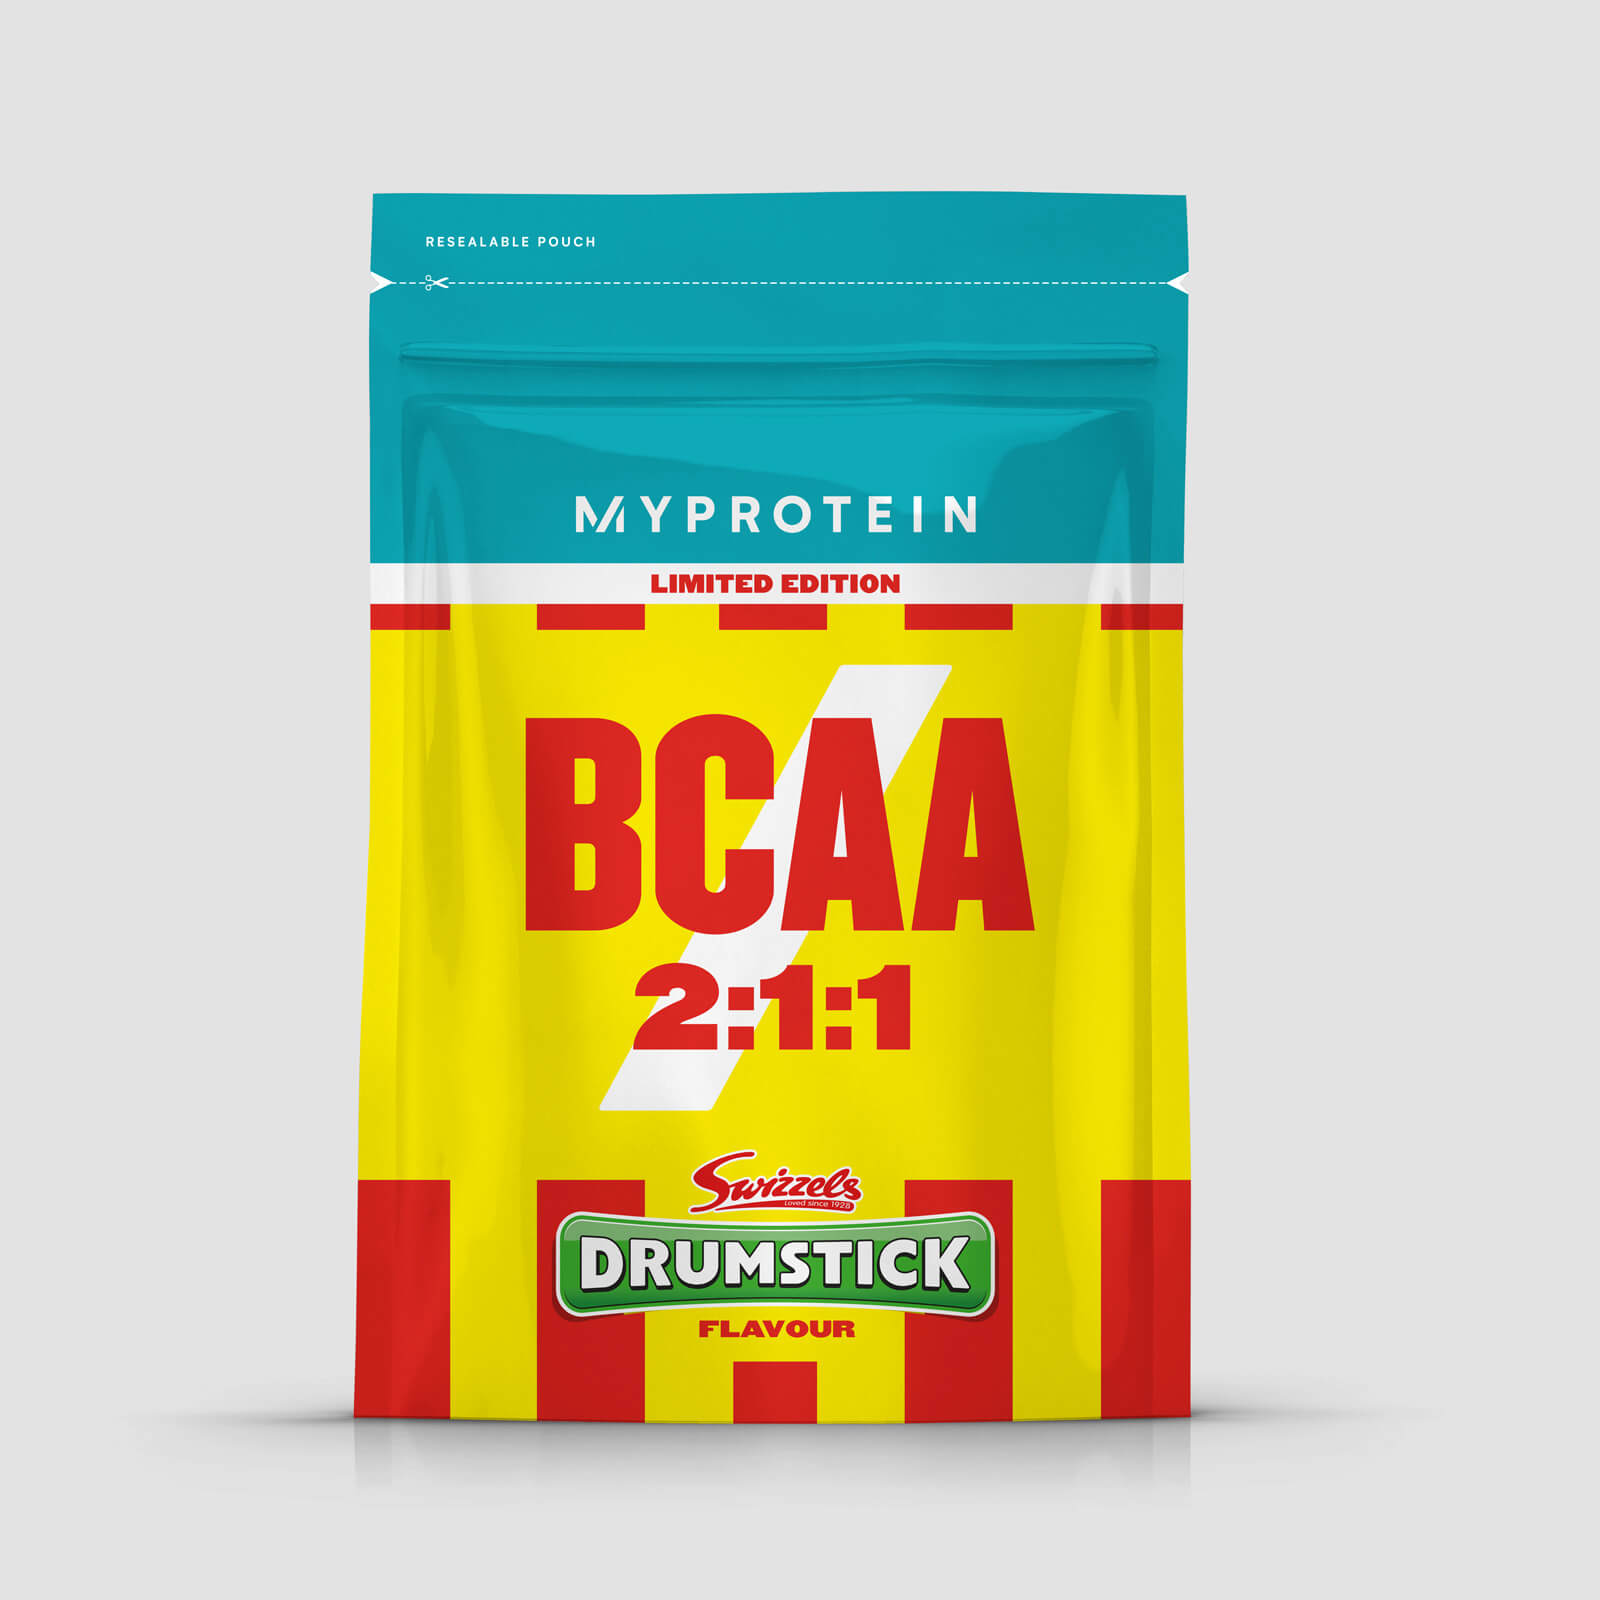 Myprotein BCAA 2:1:1 – Swizzels - 250g - Drumstick